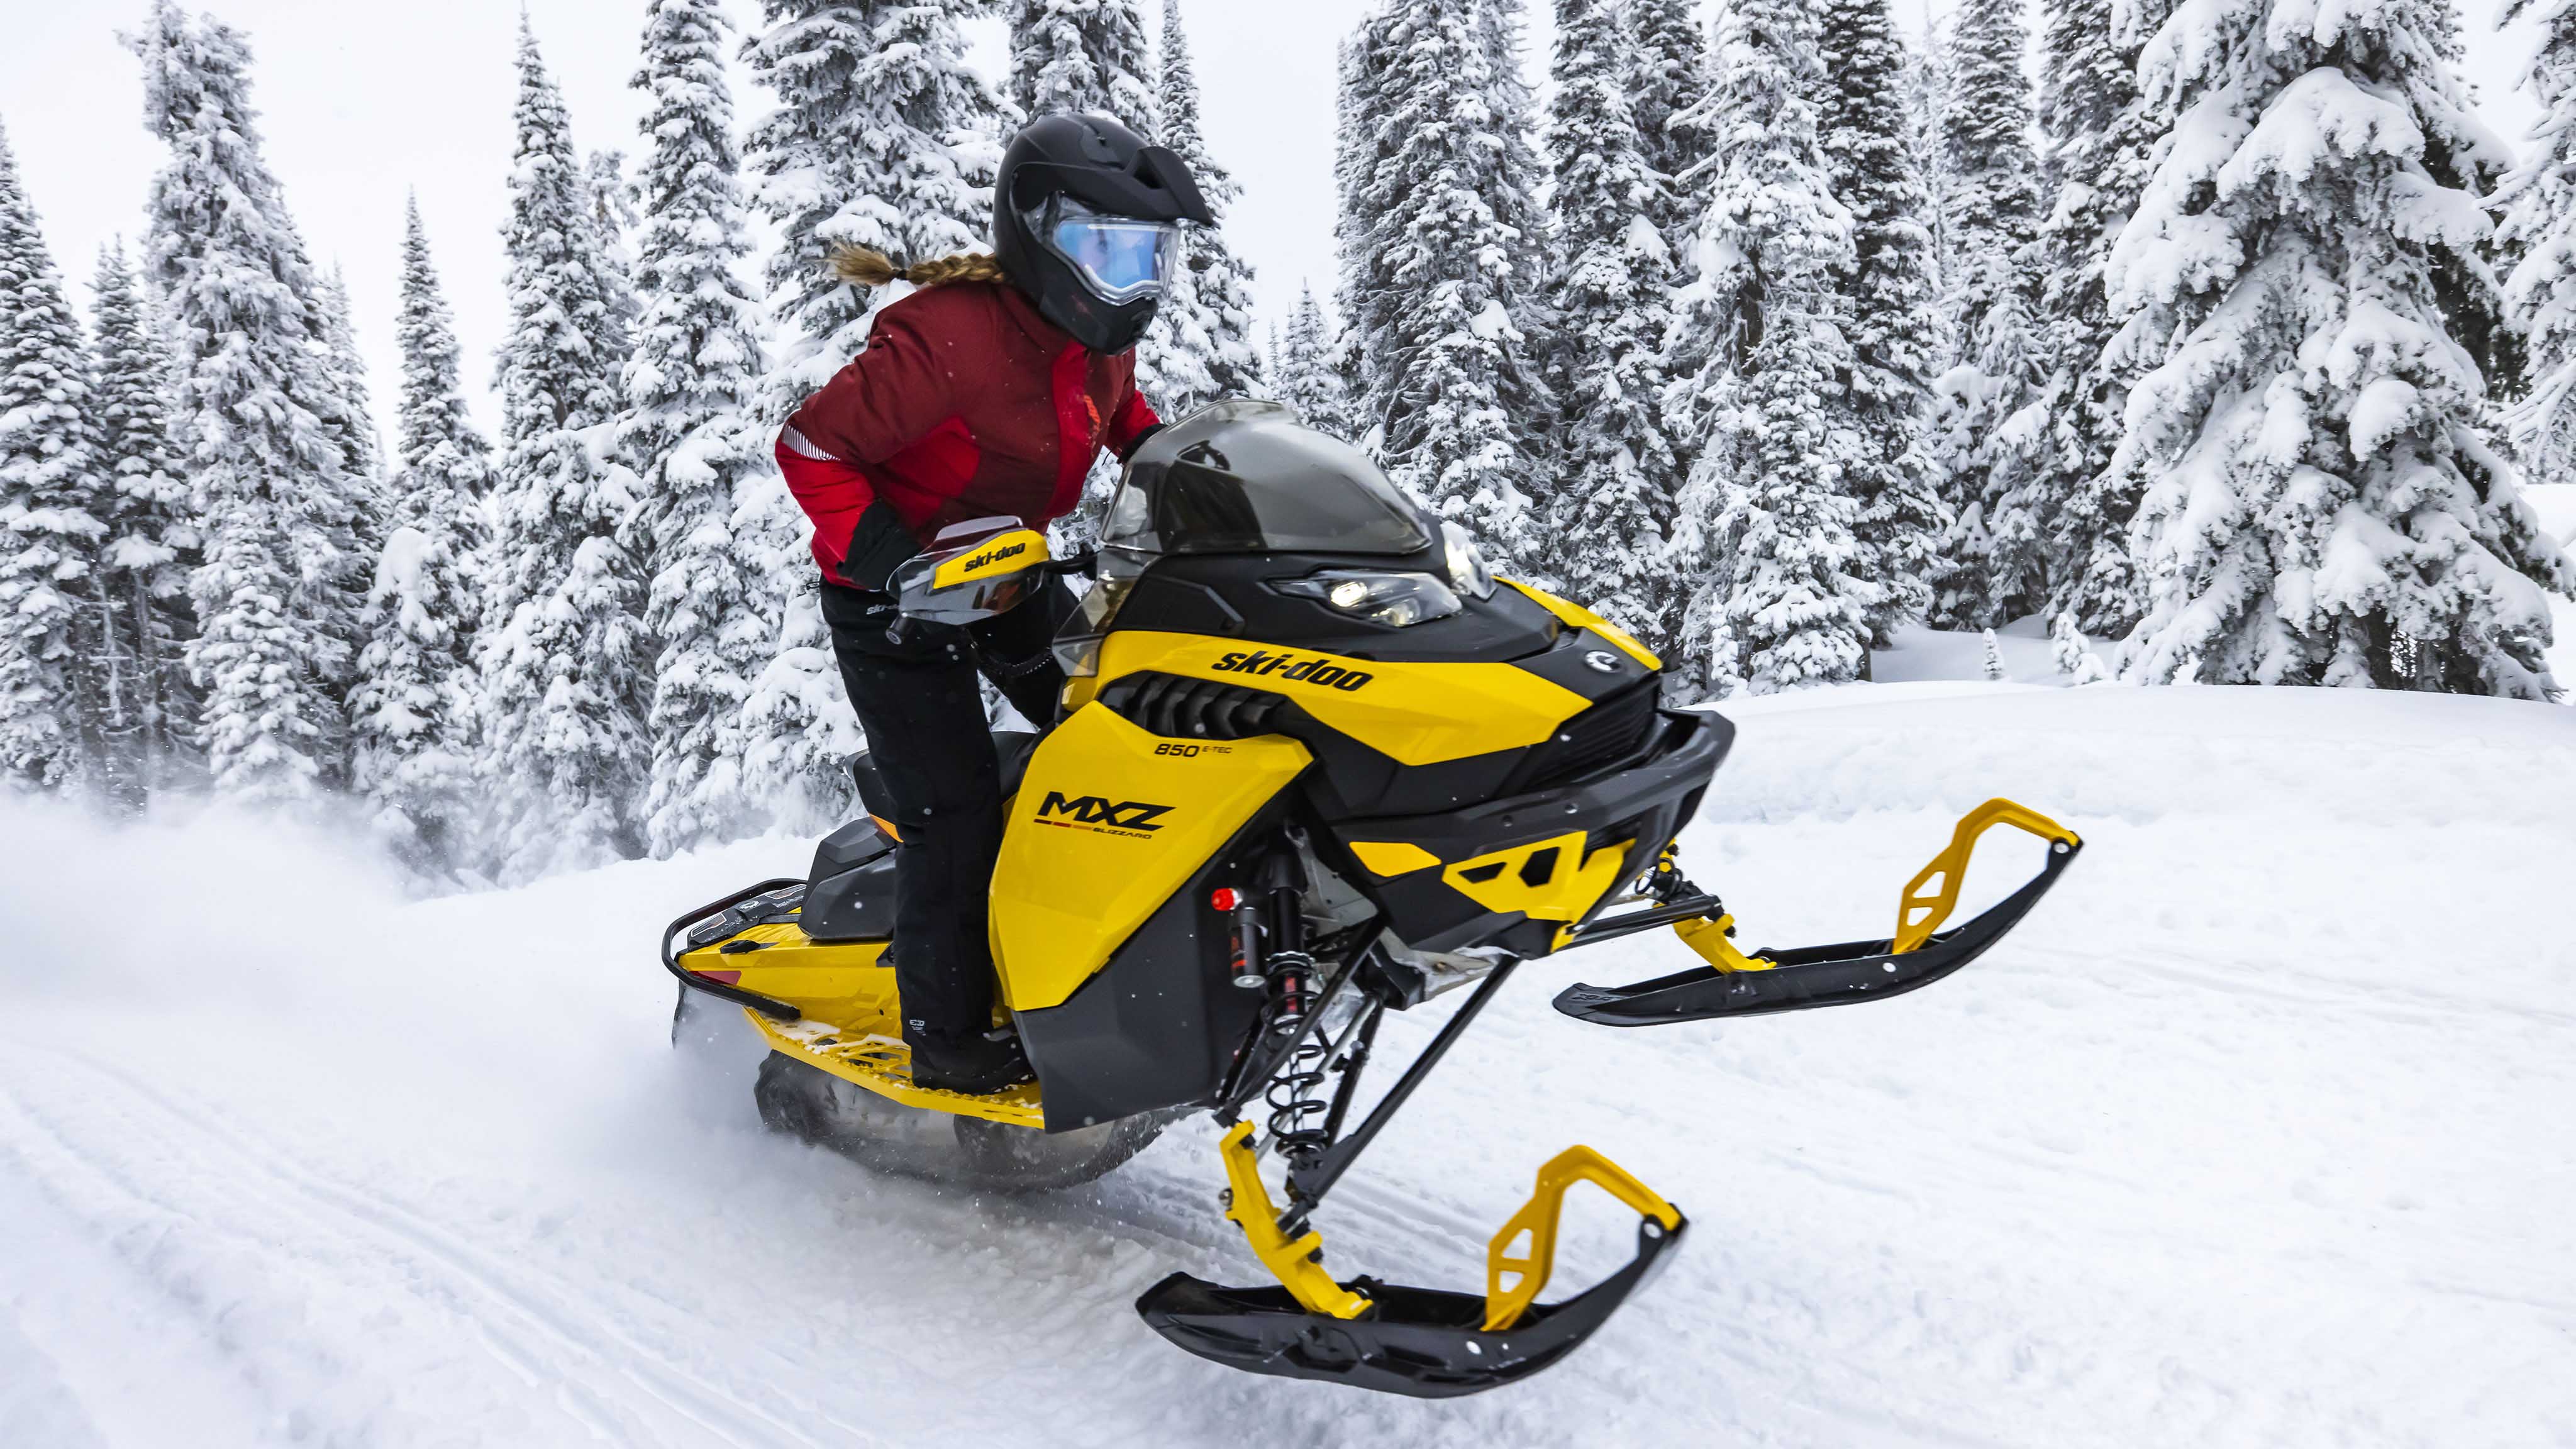 2023 Ski-Doo Motorne Sanjke Snowmobile Snow Sled BRP Ski&Sea MXZ